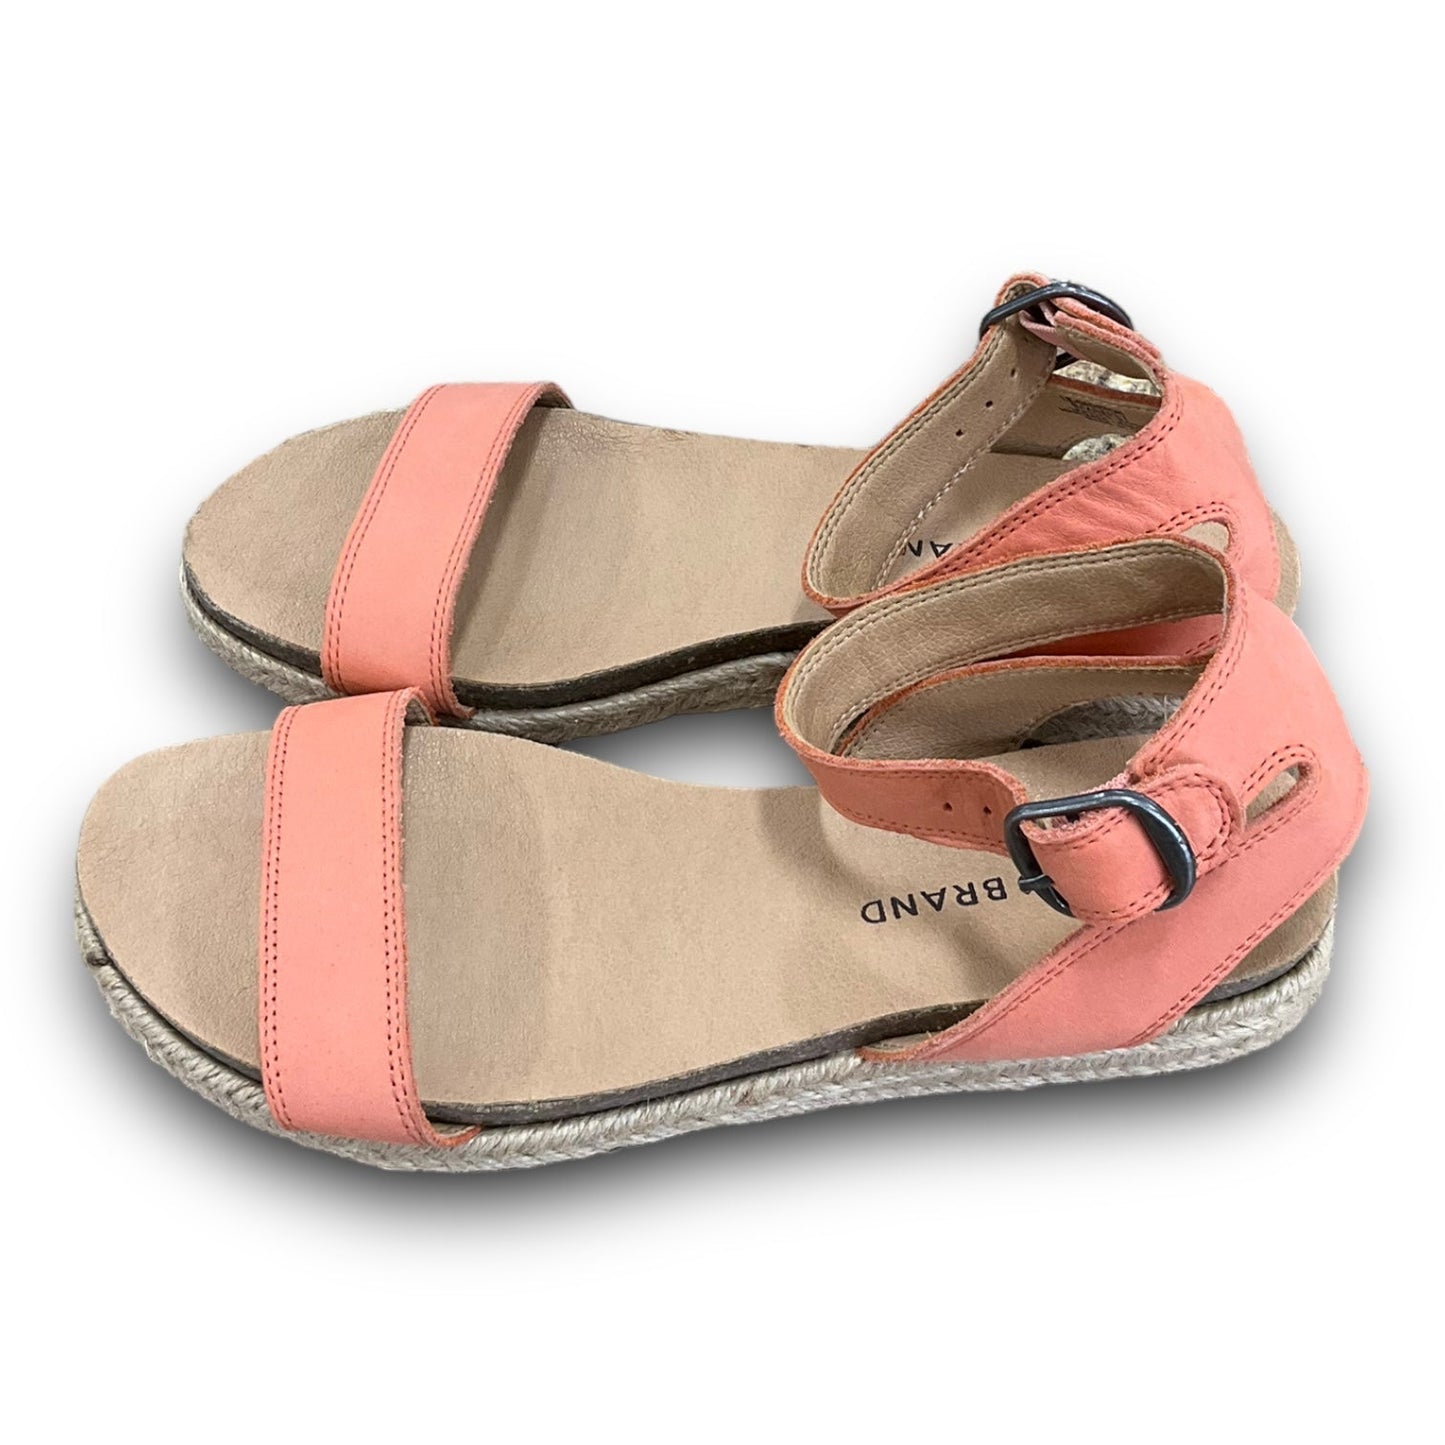 Peach Sandals Flats Lucky Brand, Size 6.5